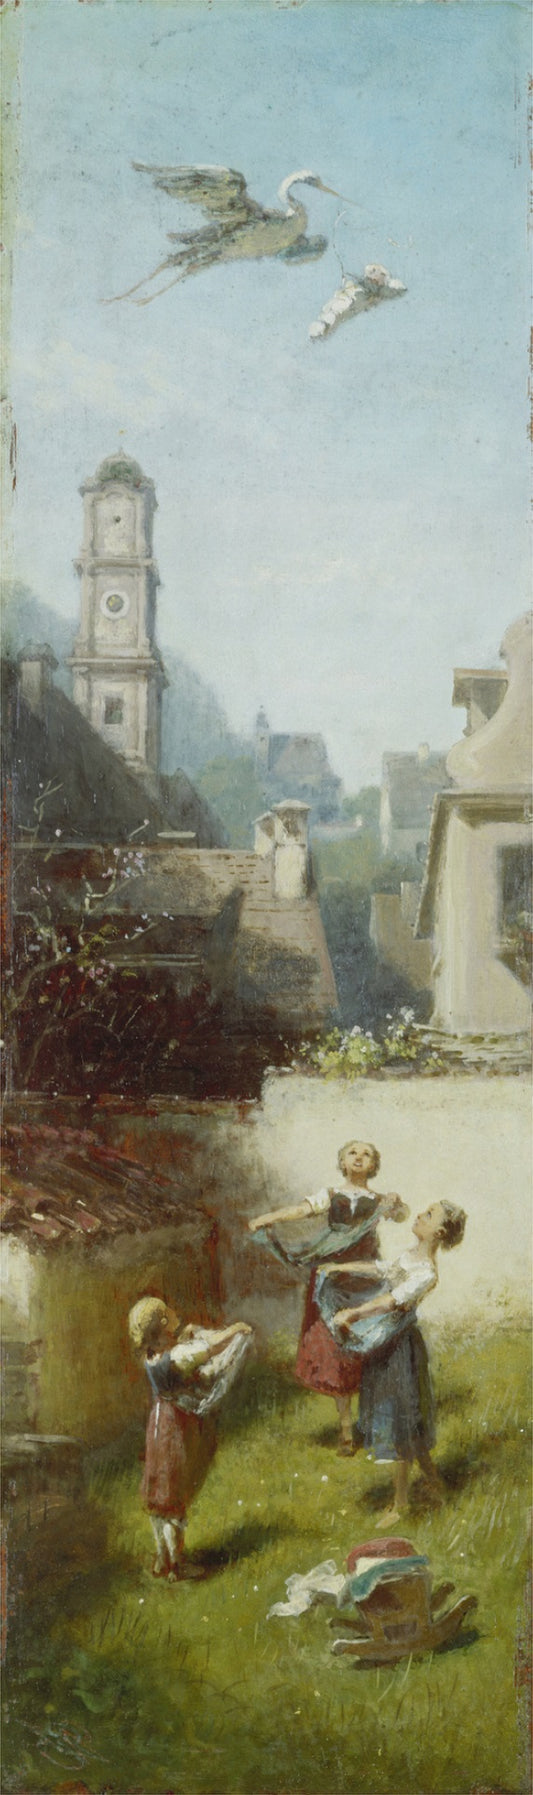 La cigogne cliquetante, 1885 - Carl Spitzweg